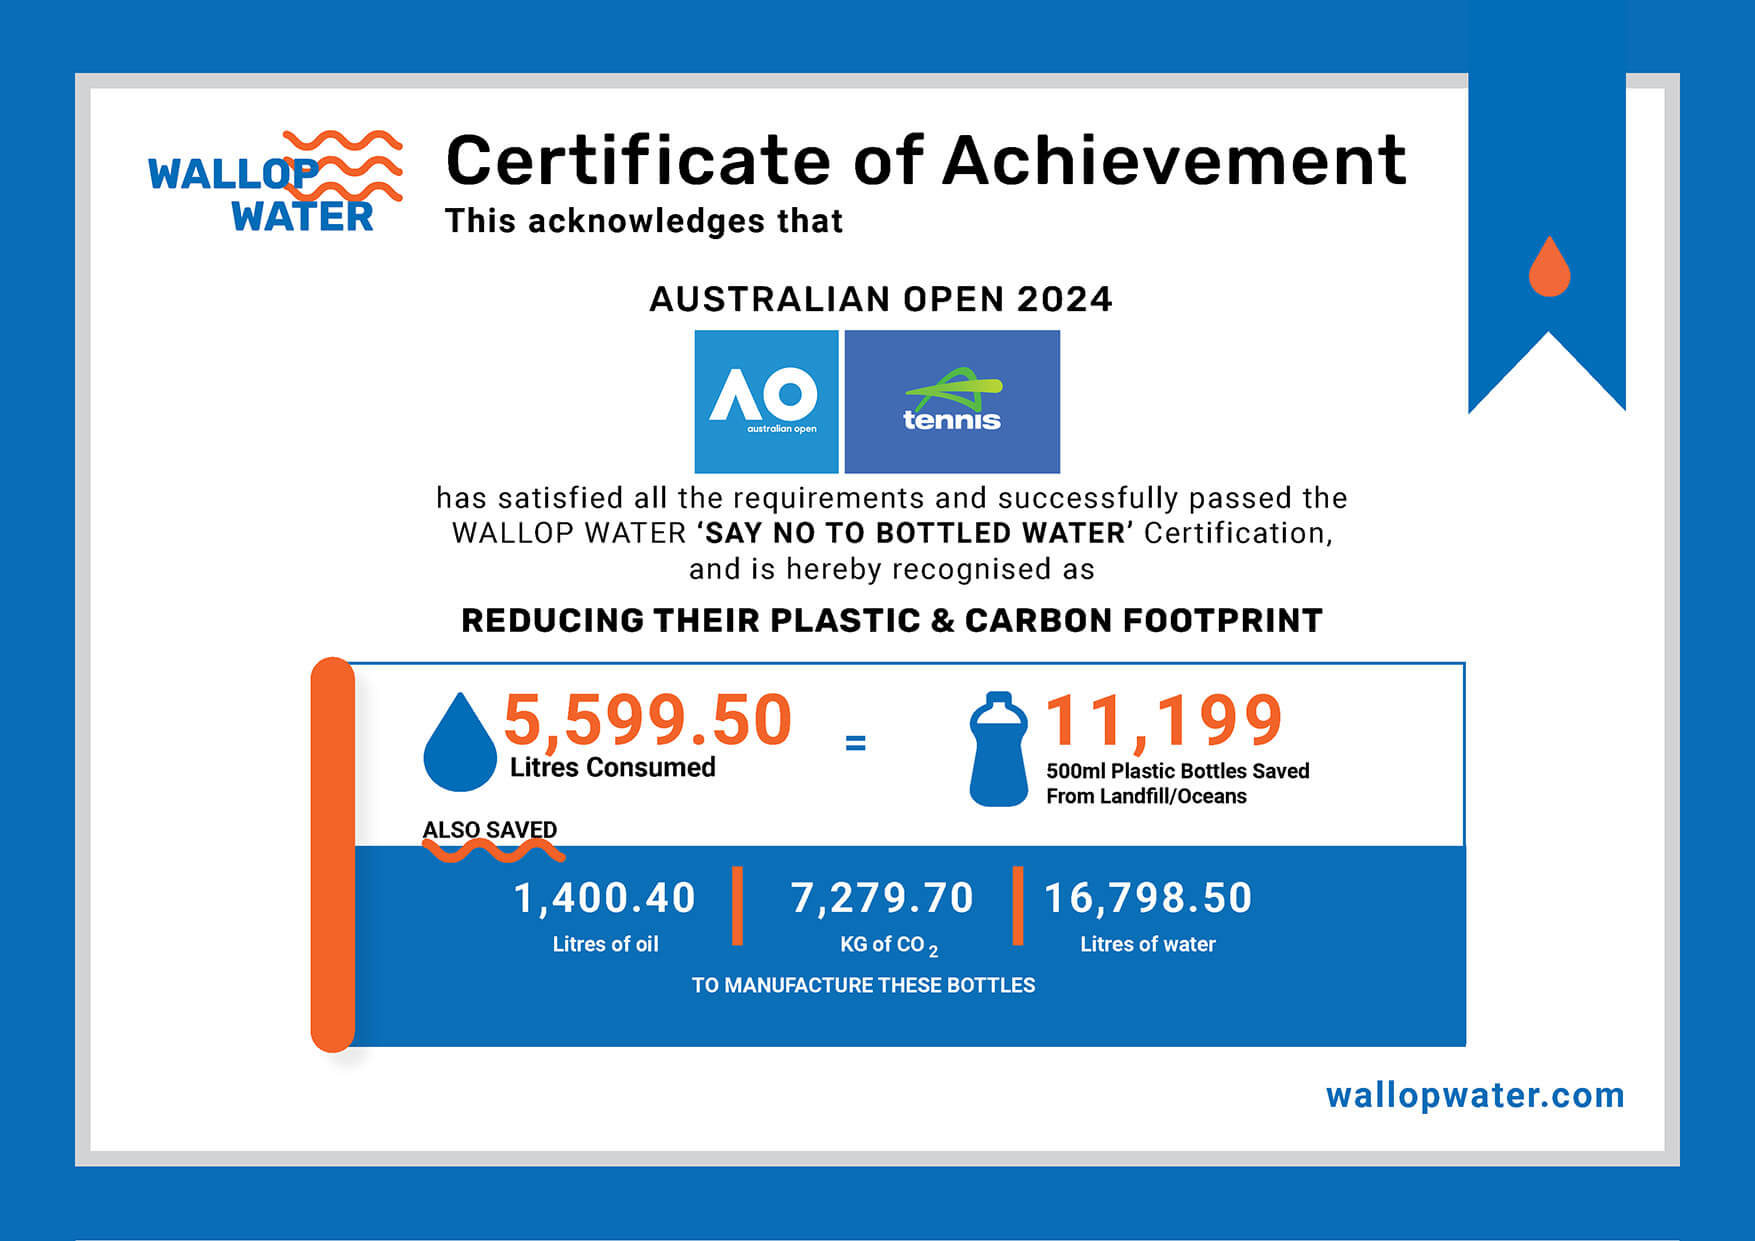 Wallop Water Certificate for AUSTRALIAN OPEN 2024